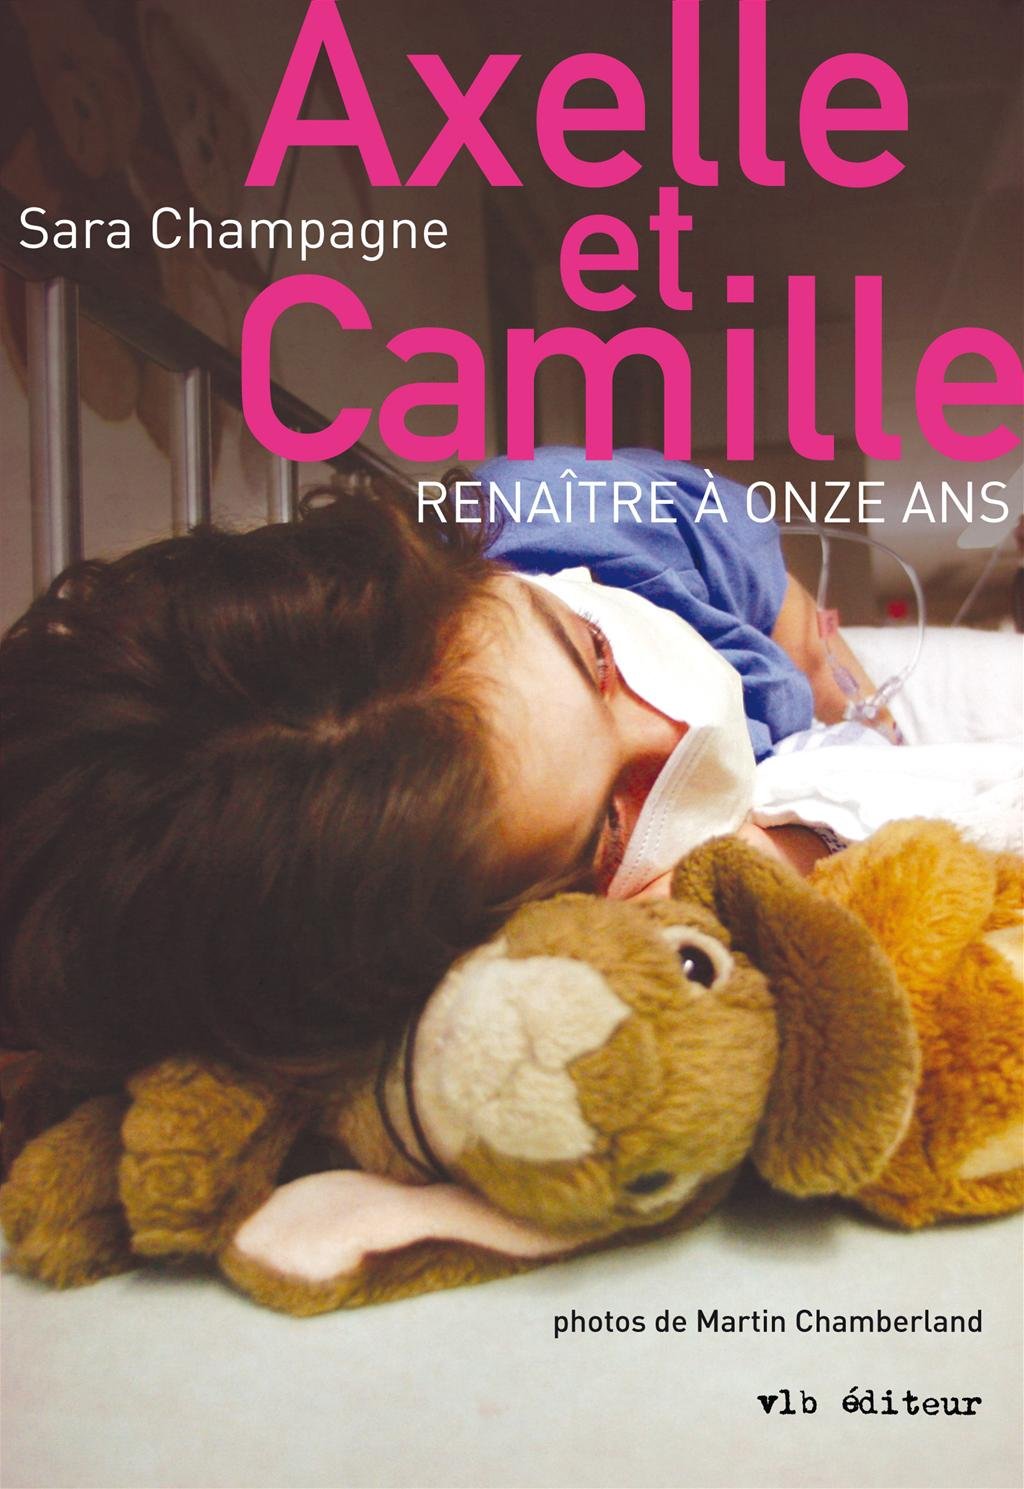 Livre ISBN 2896493727 Axelle et Camille: Renaître à onze ans (Sara Champagne)